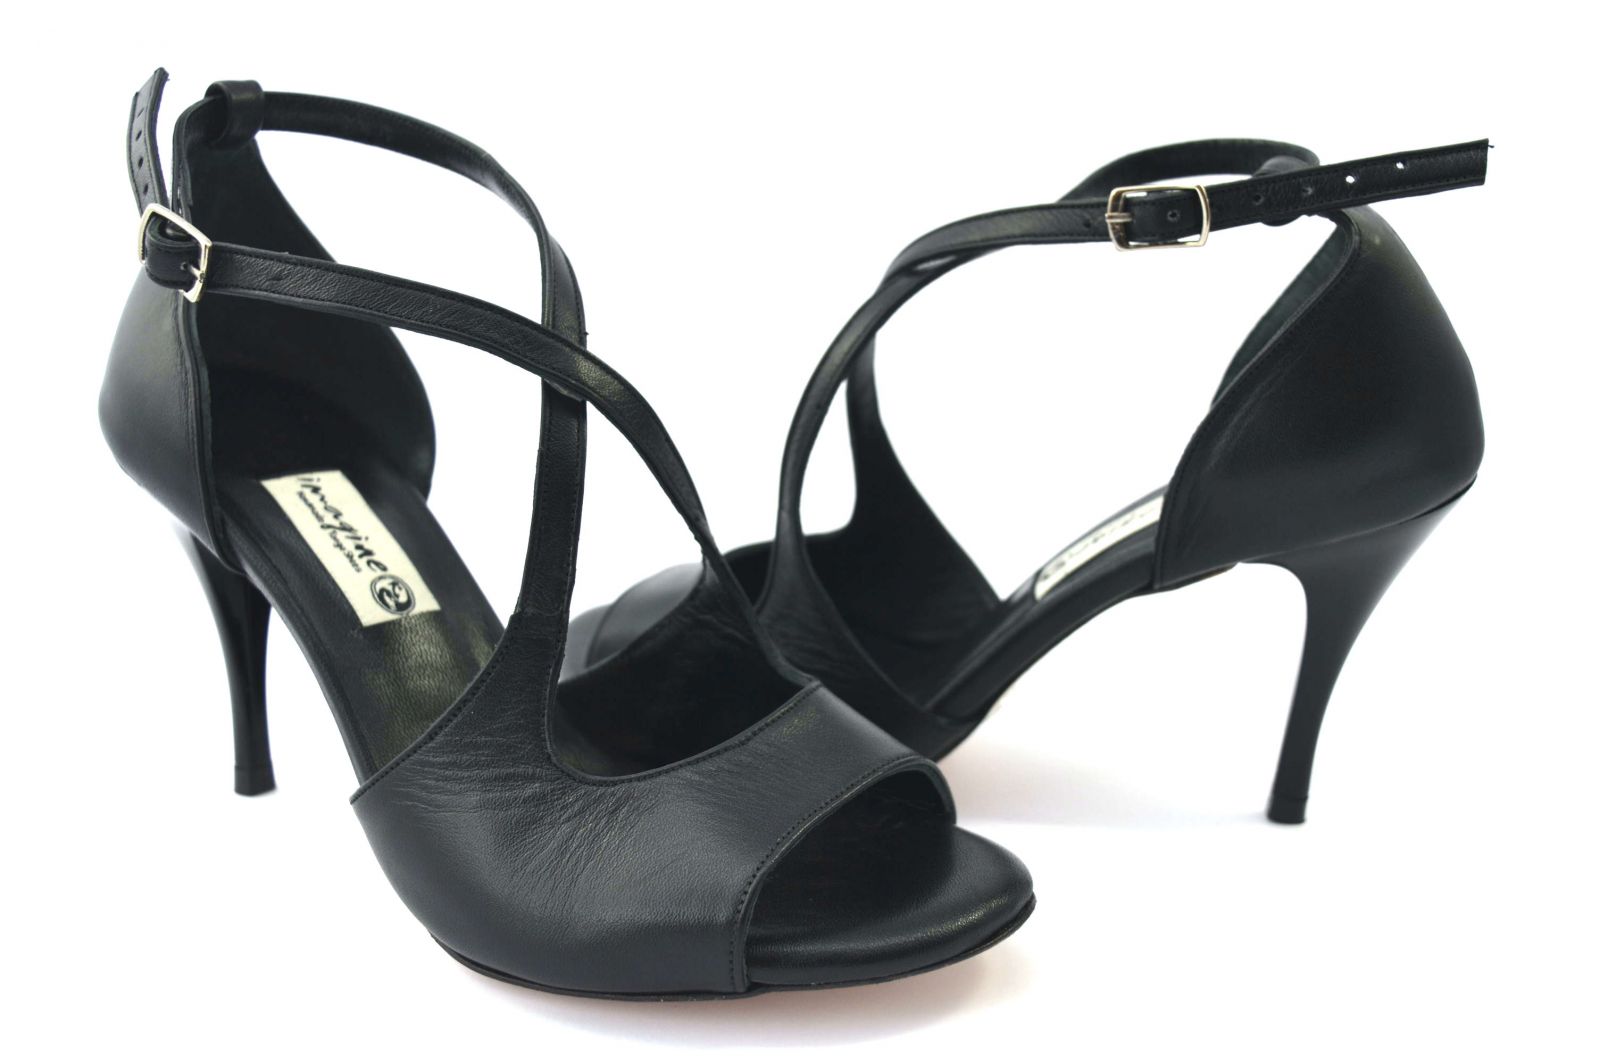 Γυναικείο παπούτσι tango, open toe από μαύρο ματ δέρμα